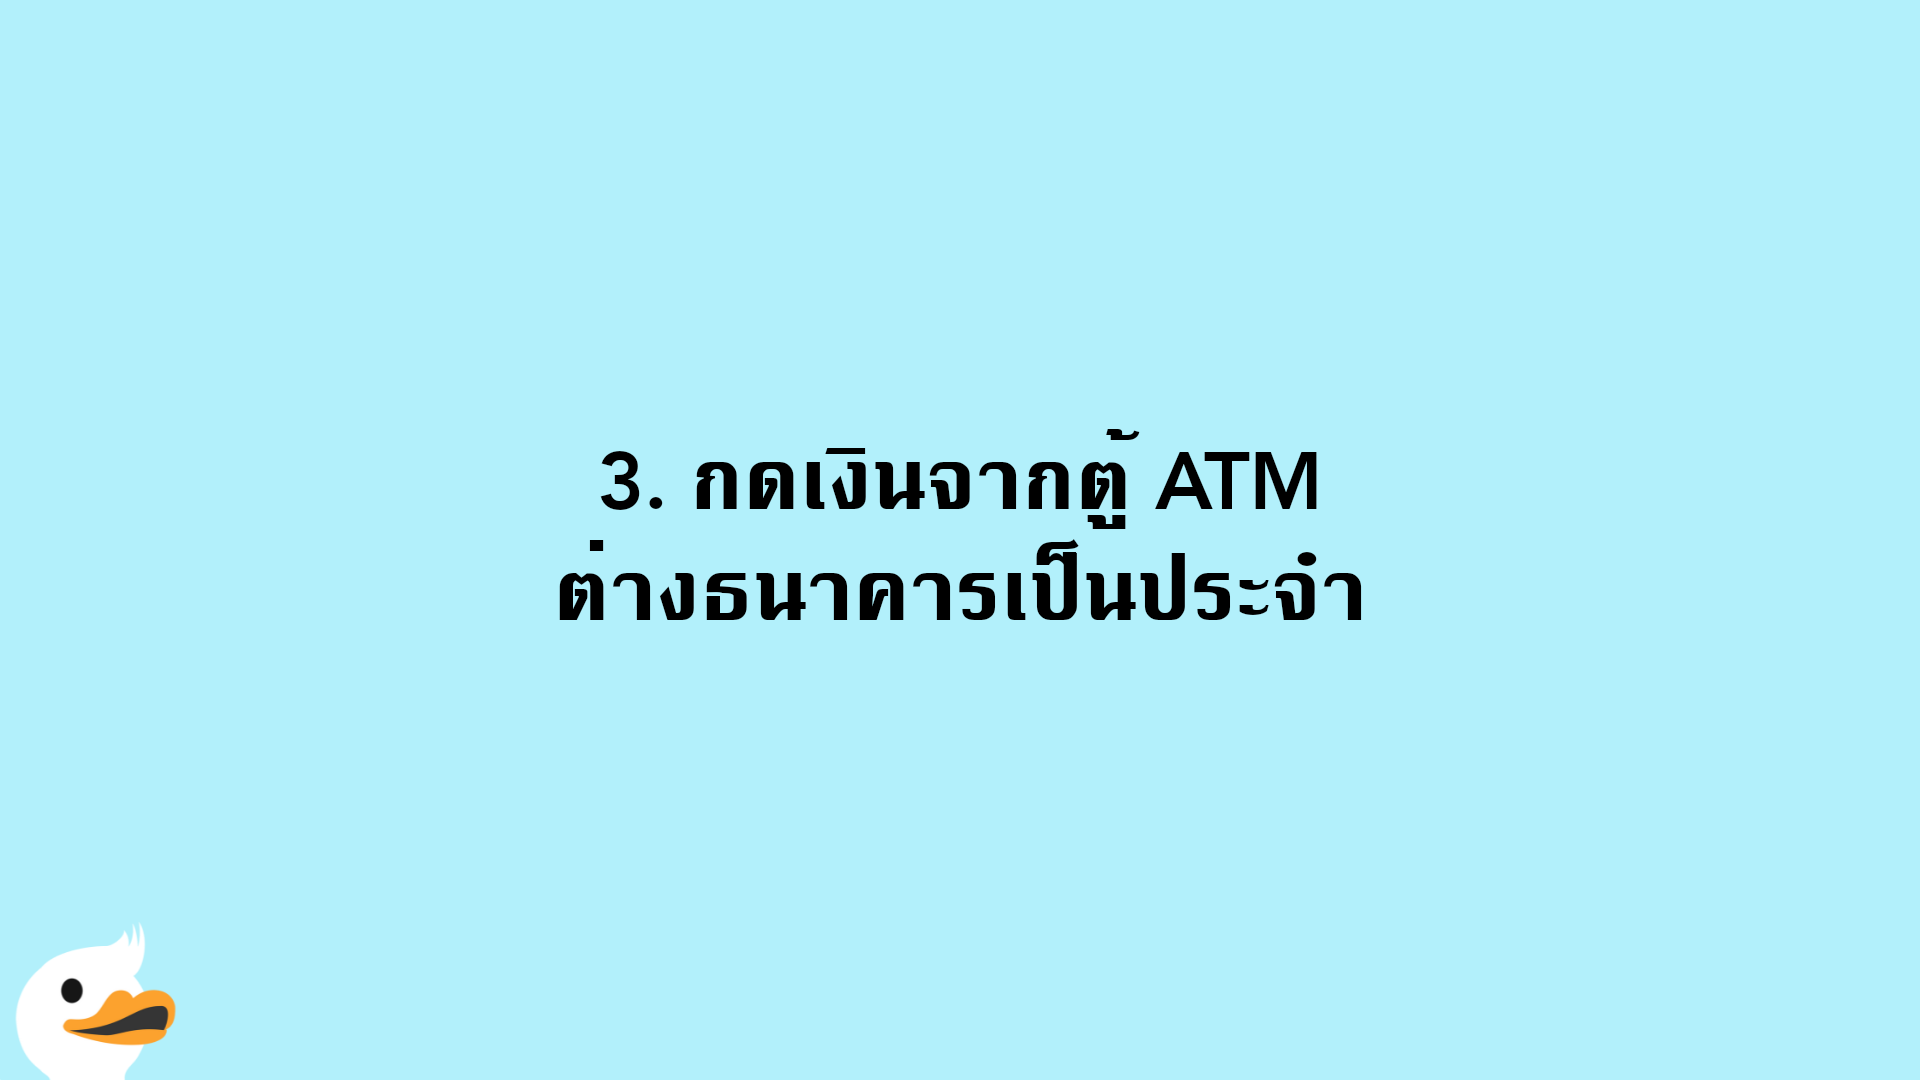 3. กดเงินจากตู้ ATM ต่างธนาคารเป็นประจำ